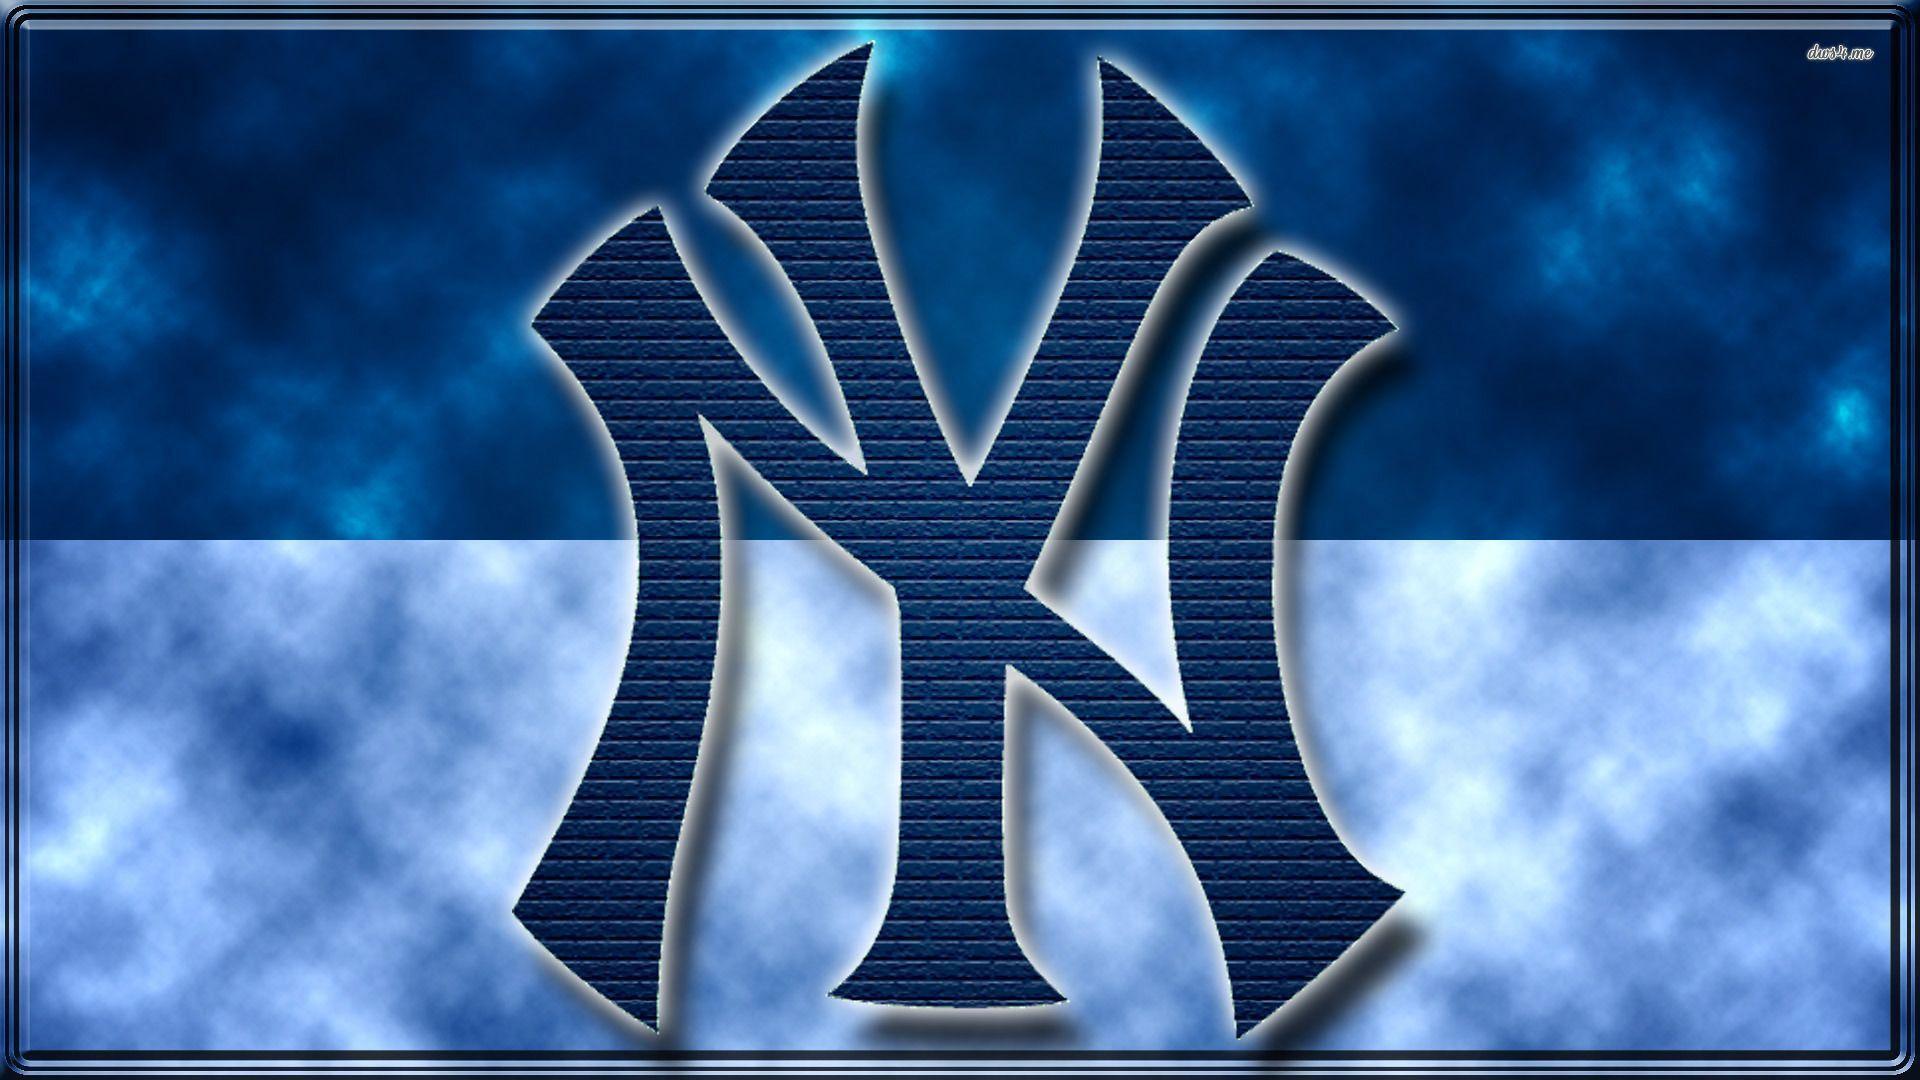 New York Yankees wallpaper wallpaper - #